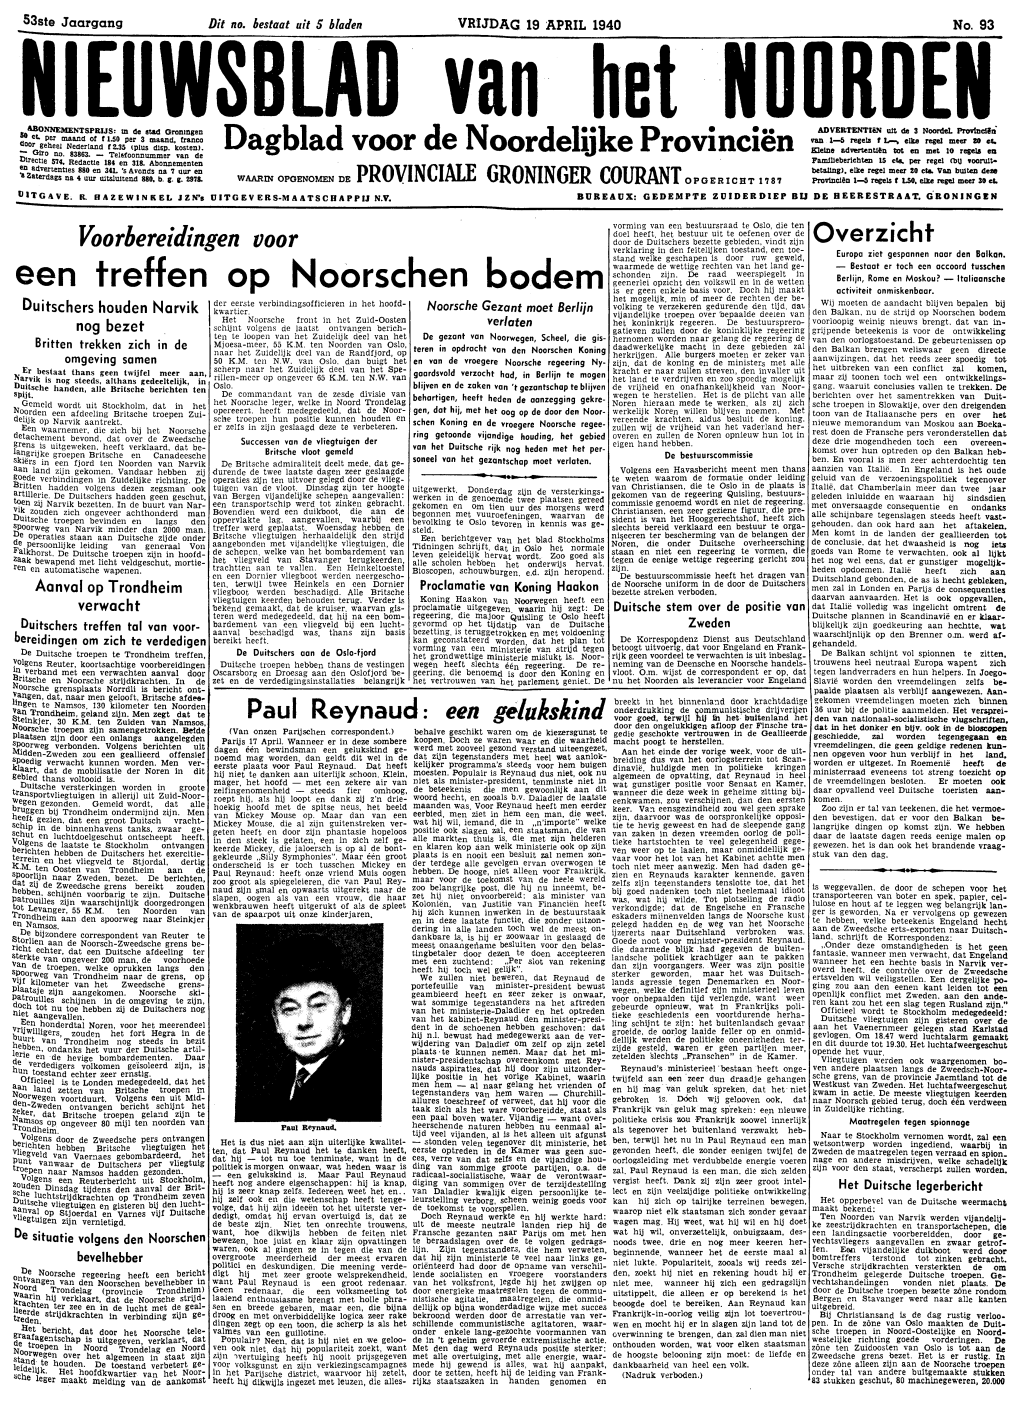 Nieuwsblad Van Het Noorden Van Vrijdag 19 April 1940 Eerste Blad